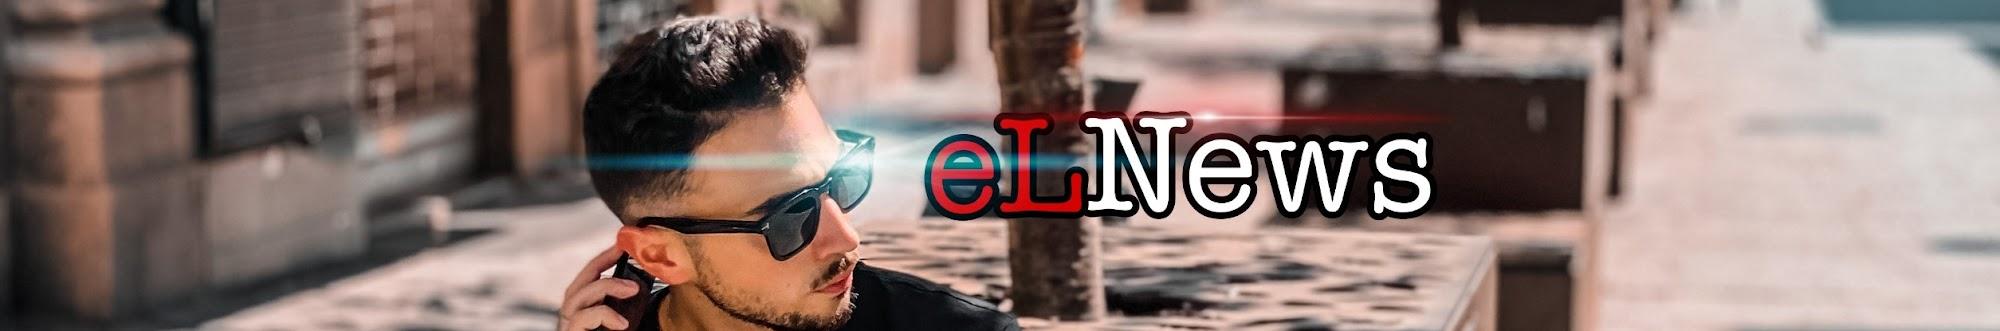 elNews